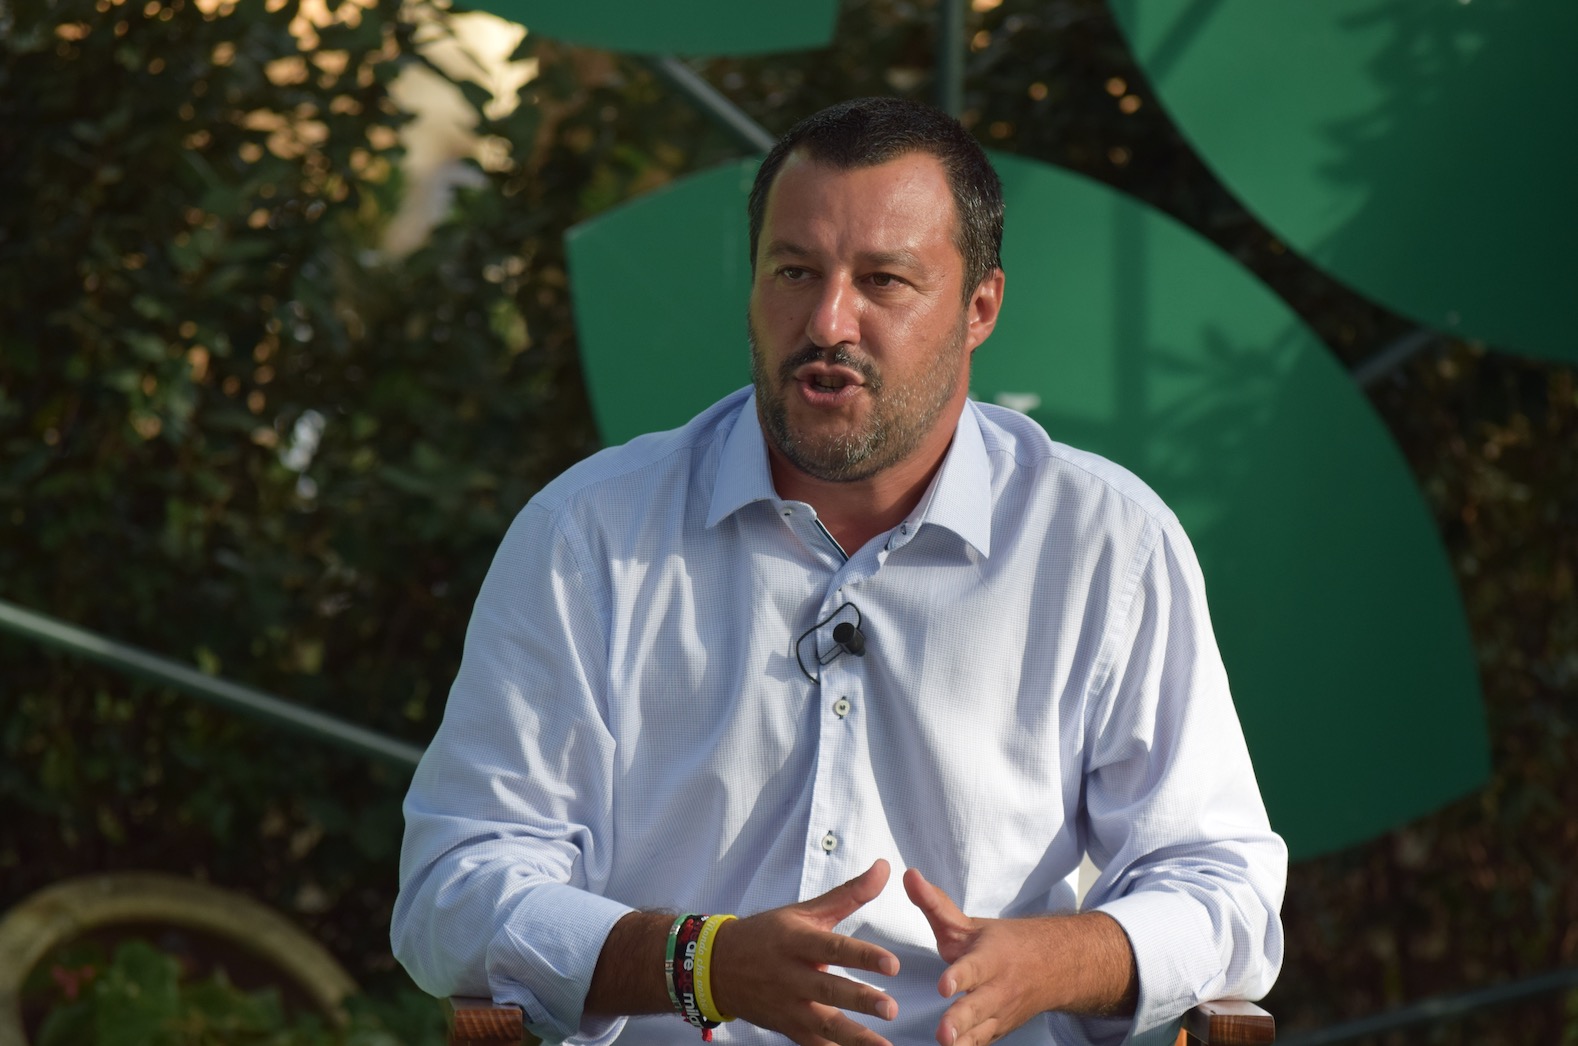 Morto durante il controllo di Polizia, Salvini: “Dovevano dargli cappuccino e brioche?”